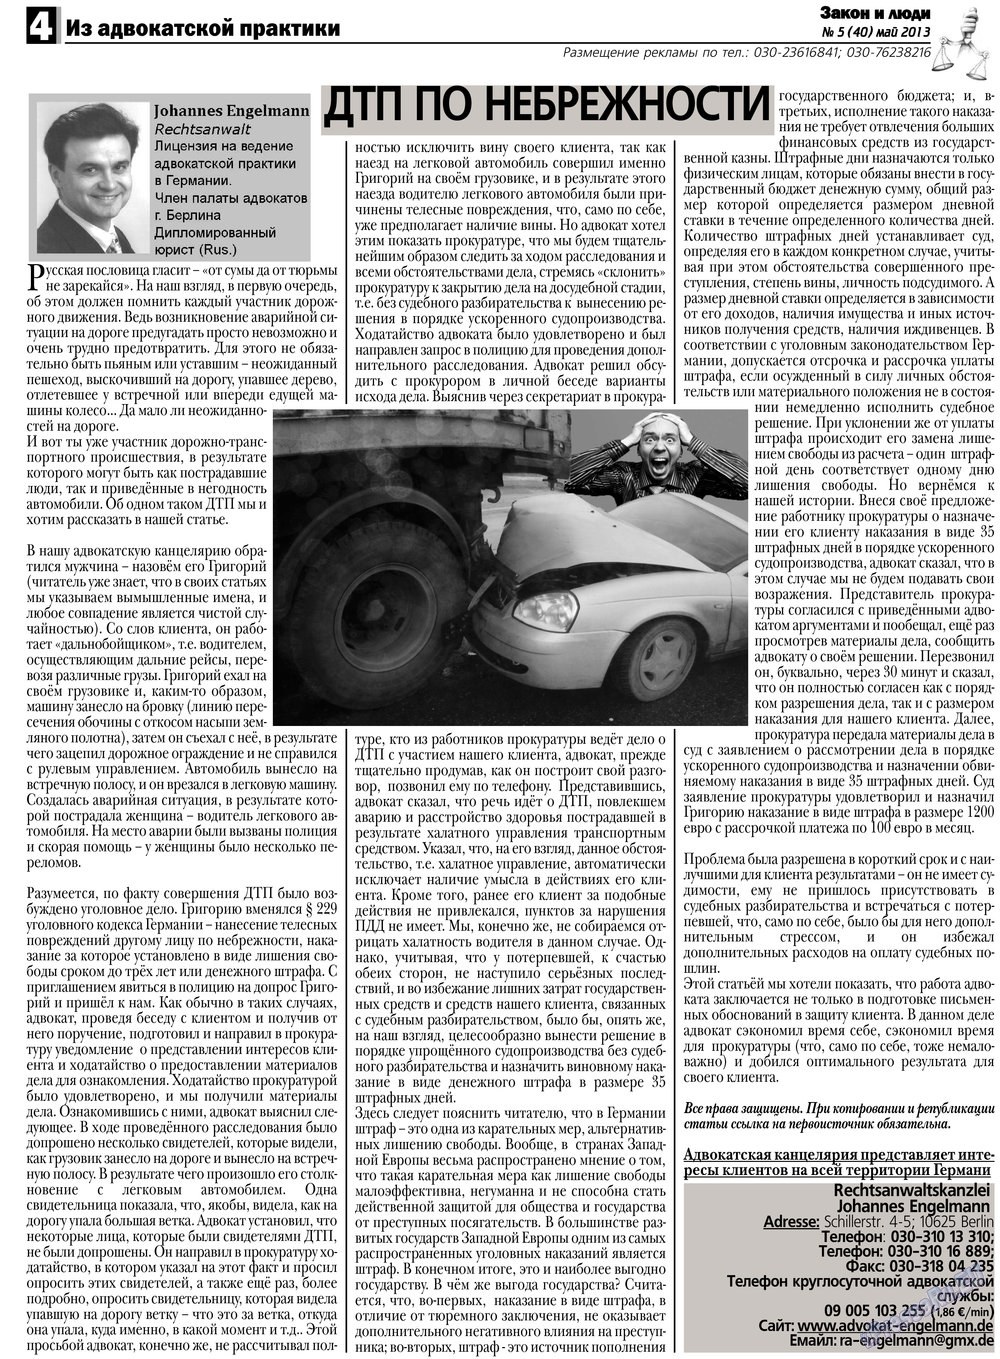 Закон и люди, газета. 2013 №5 стр.4